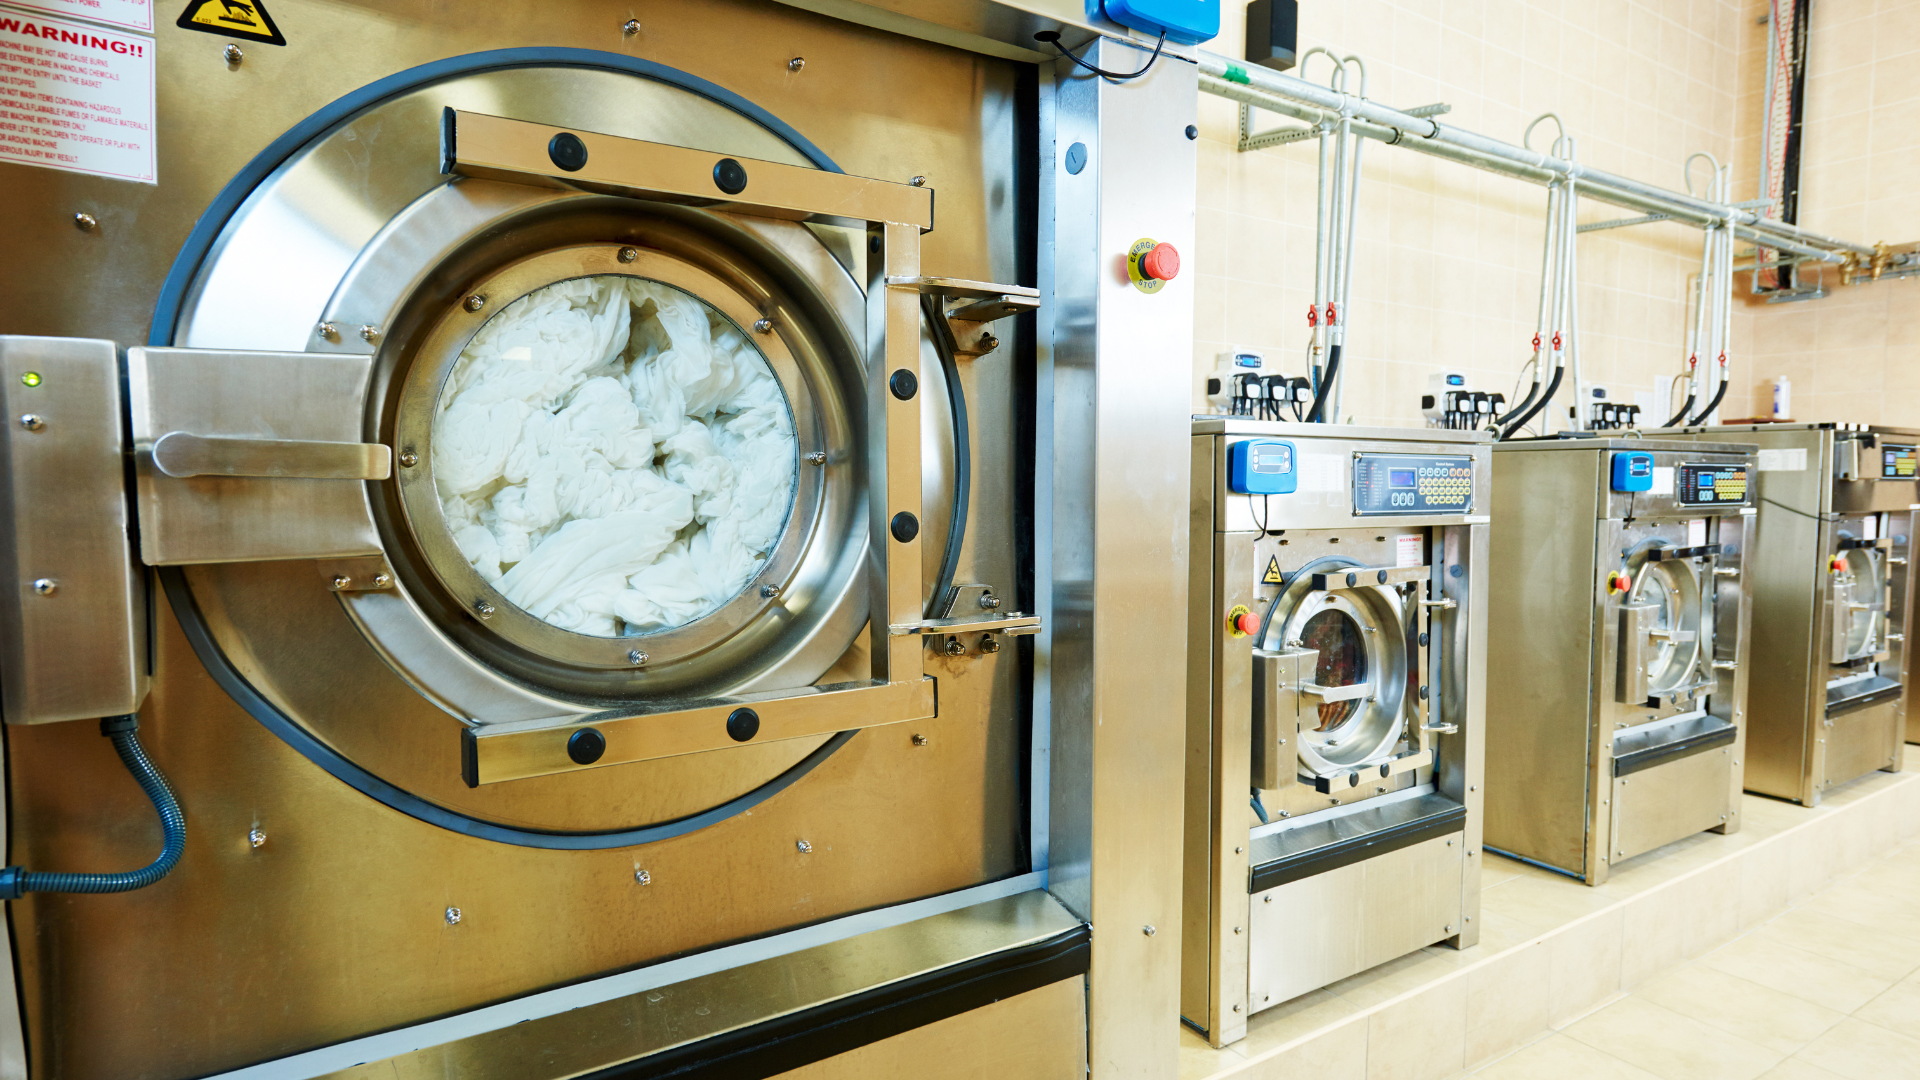 Machines à laver RFID dans une blanchisserie industrielle